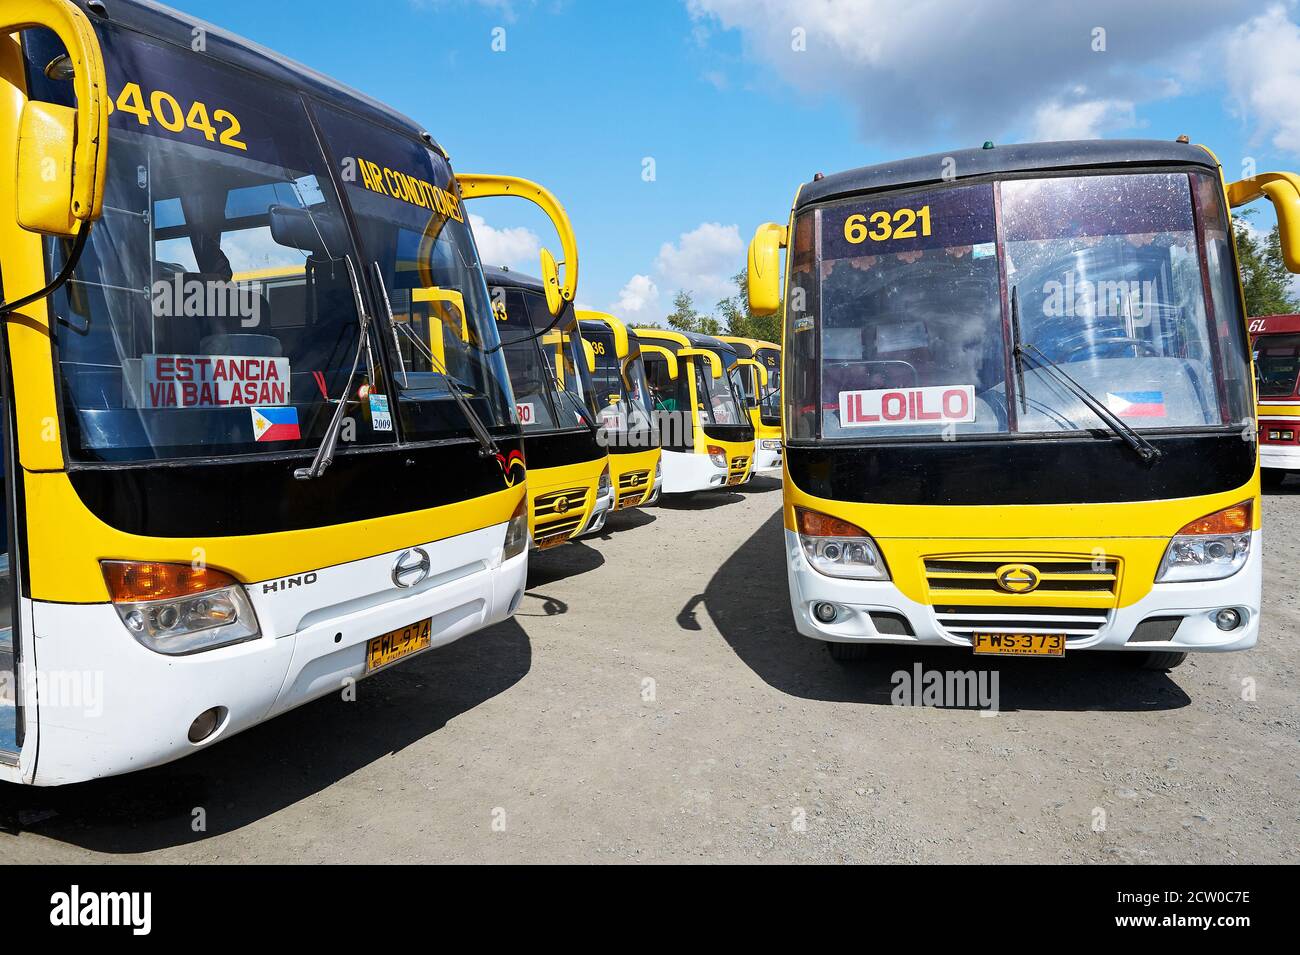 Molti autobus di colore giallo della compagnia di linea Ceres in linea al Terminal degli autobus Taggak a Iloilo City, Panay, Visayas, Filippine Foto Stock